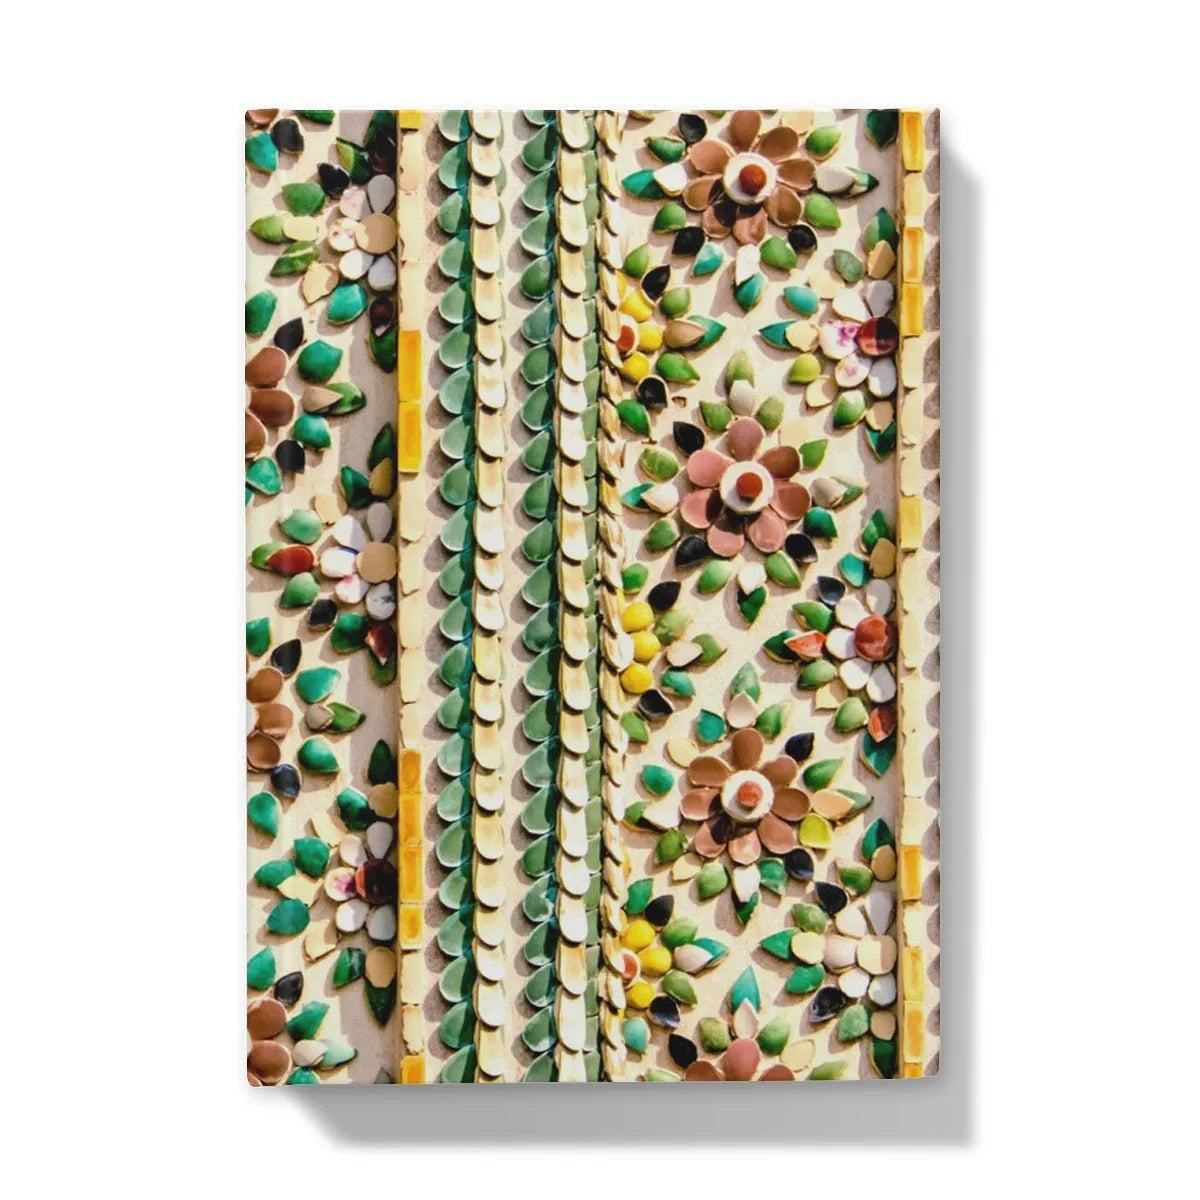 Flower Beds Hardback Journal - 5’x7’ / Lined - Aesthetic Art